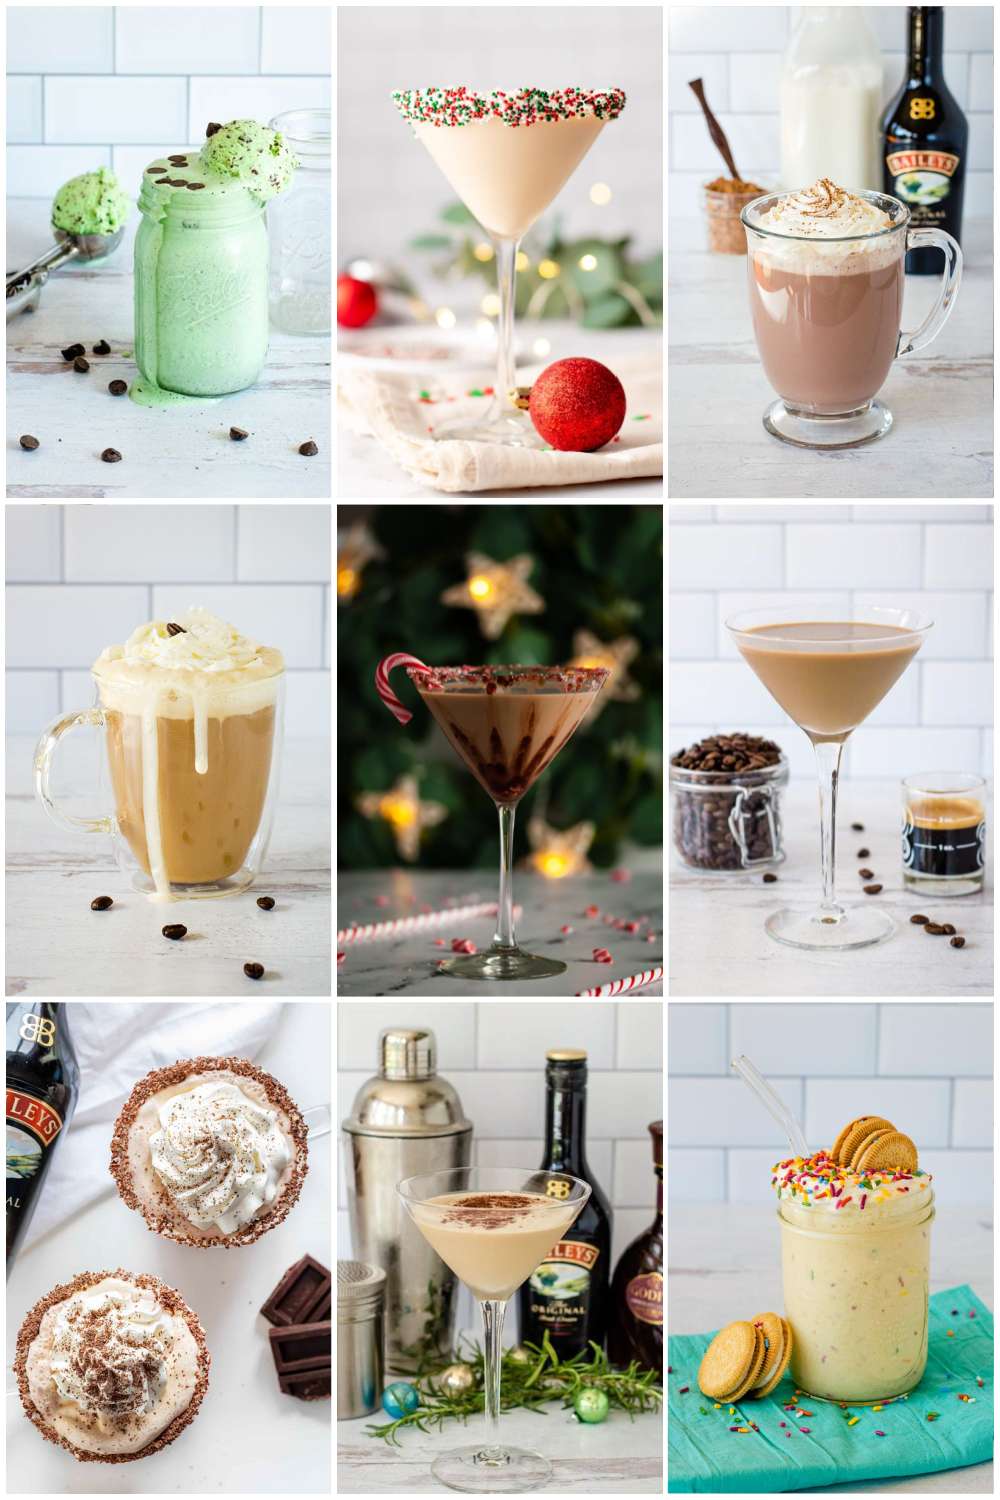 Christmas drinks with Baileys